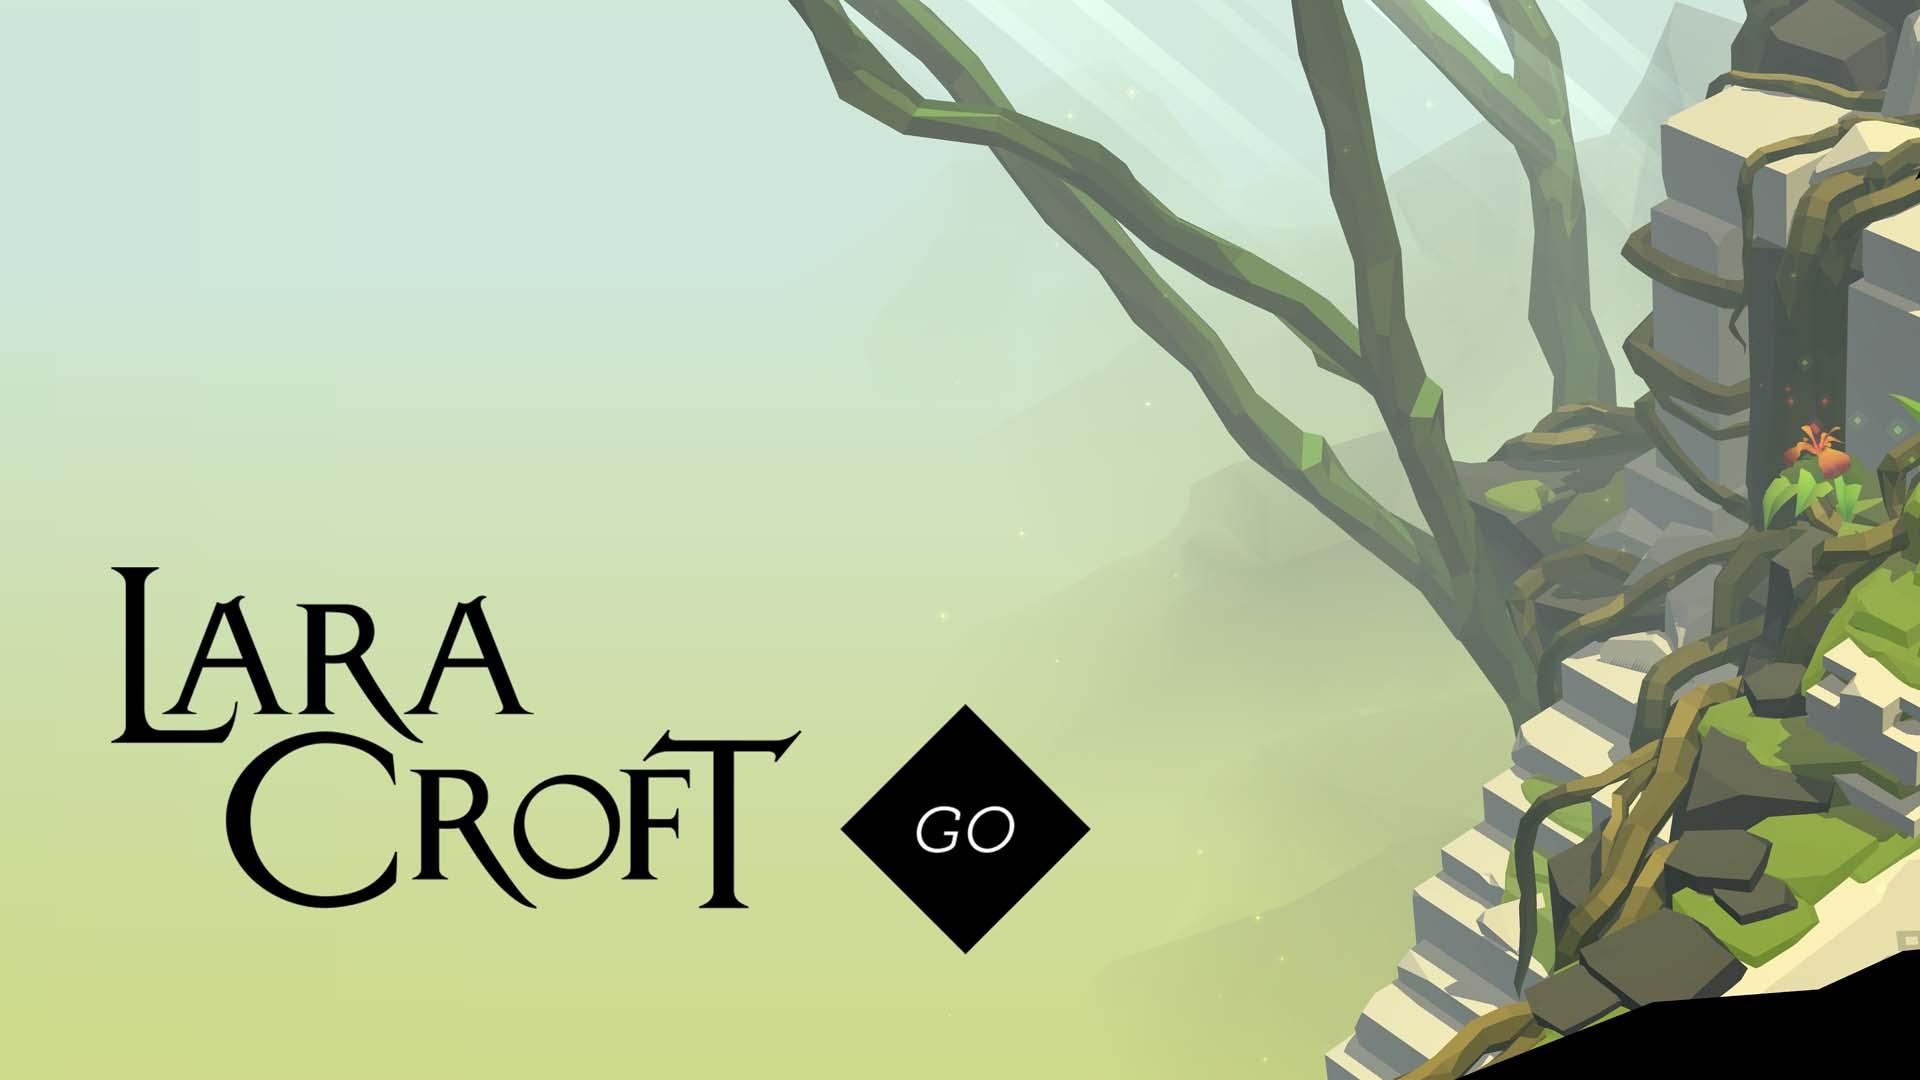 Lara Croft GO đạt được danh hiệu Game of the Year